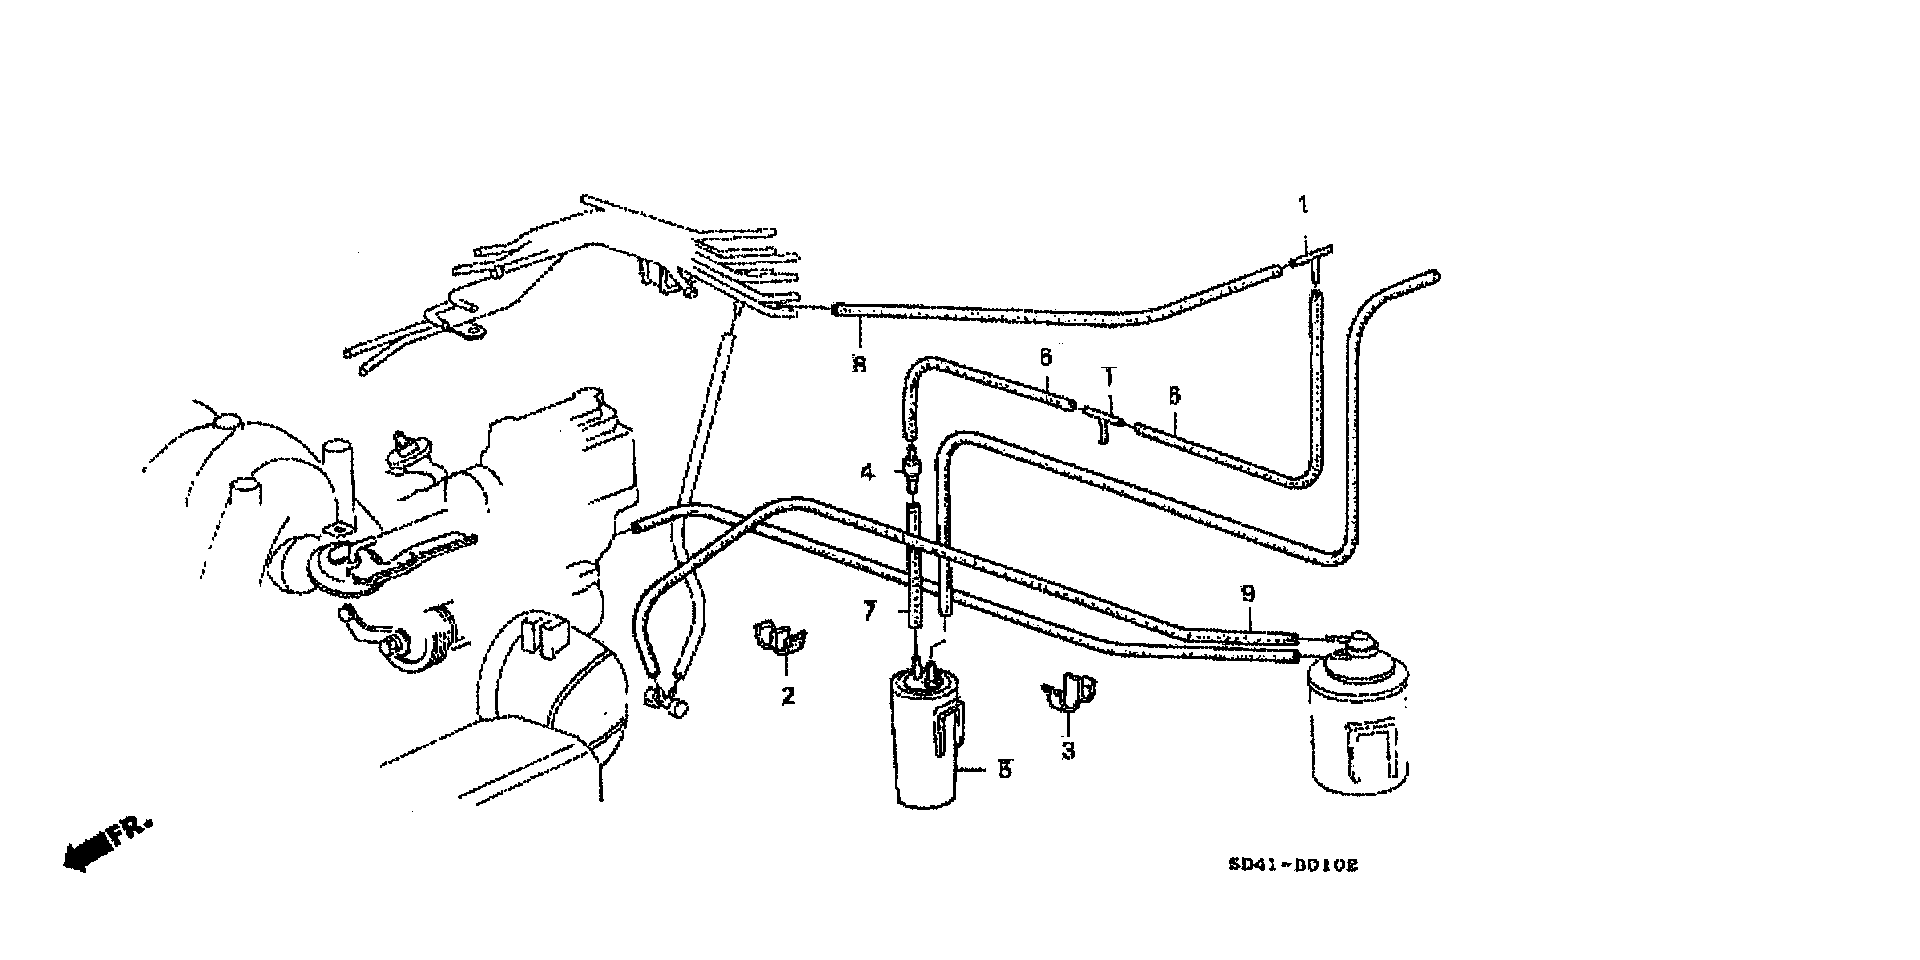 CANISTER TUBING(KA4)